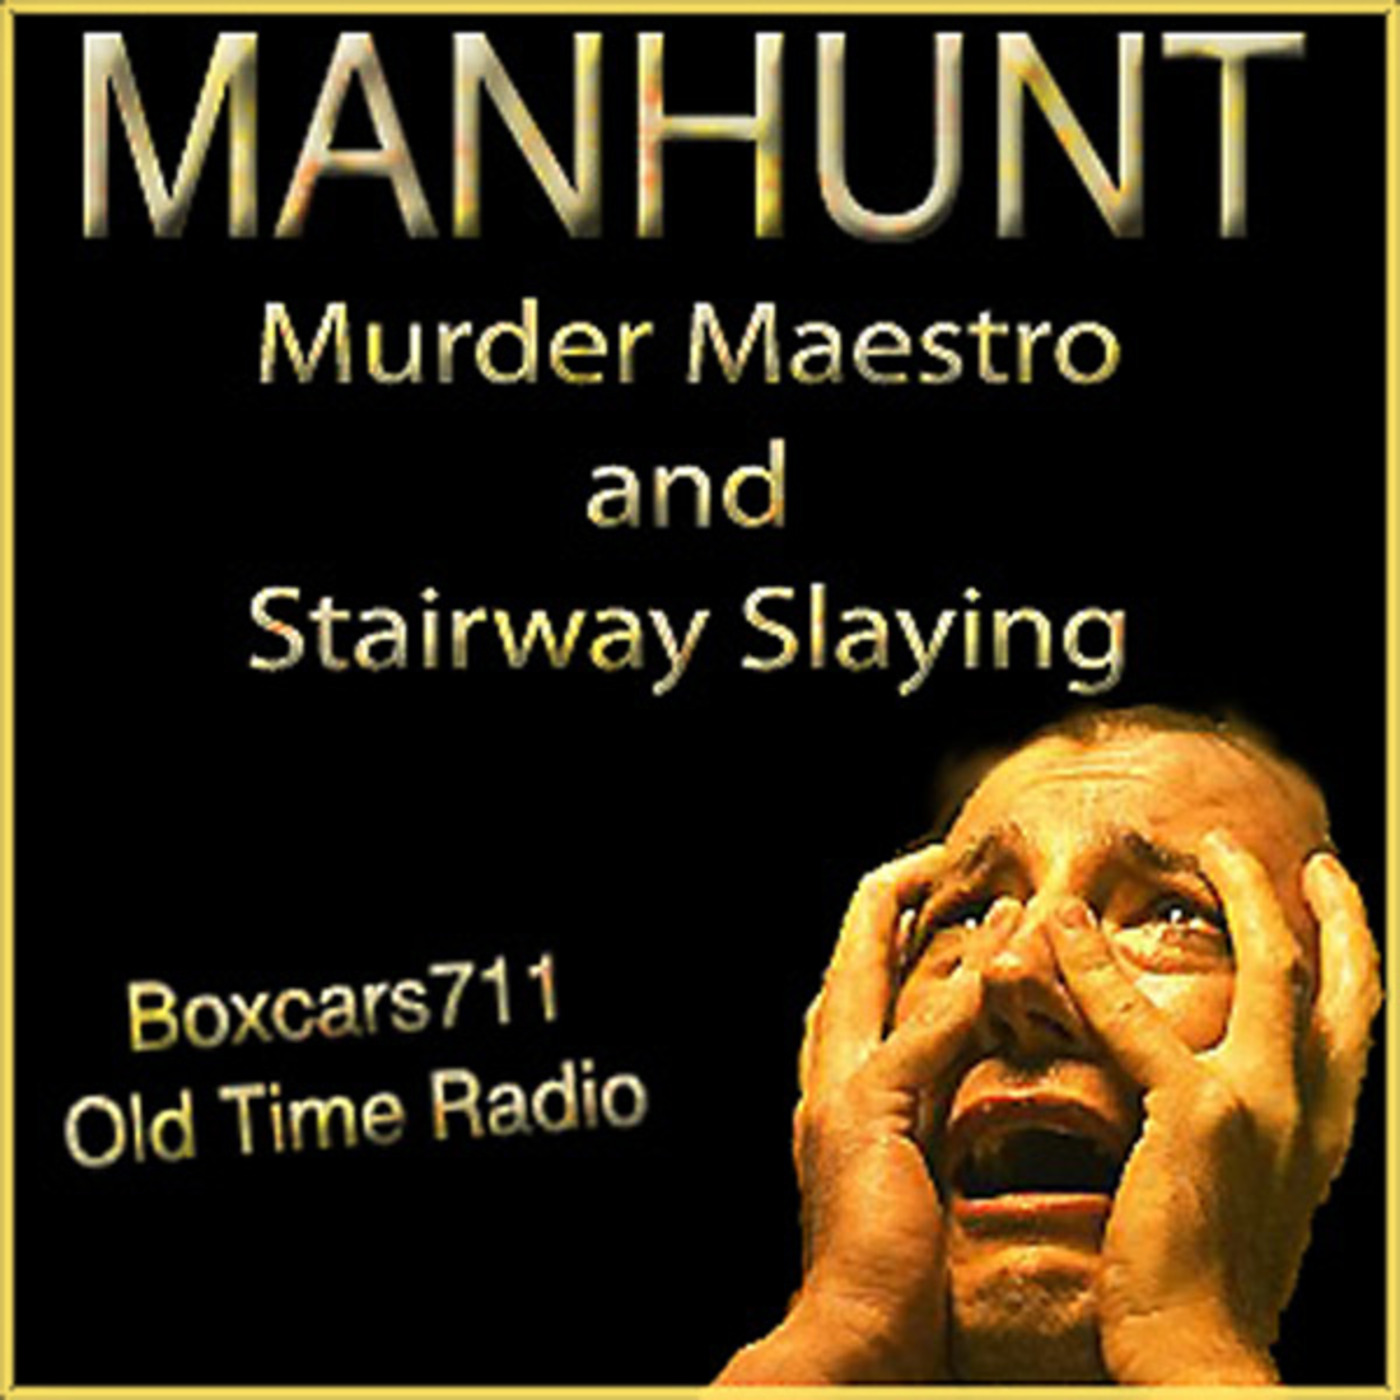 Episode 9483: Manhunt 